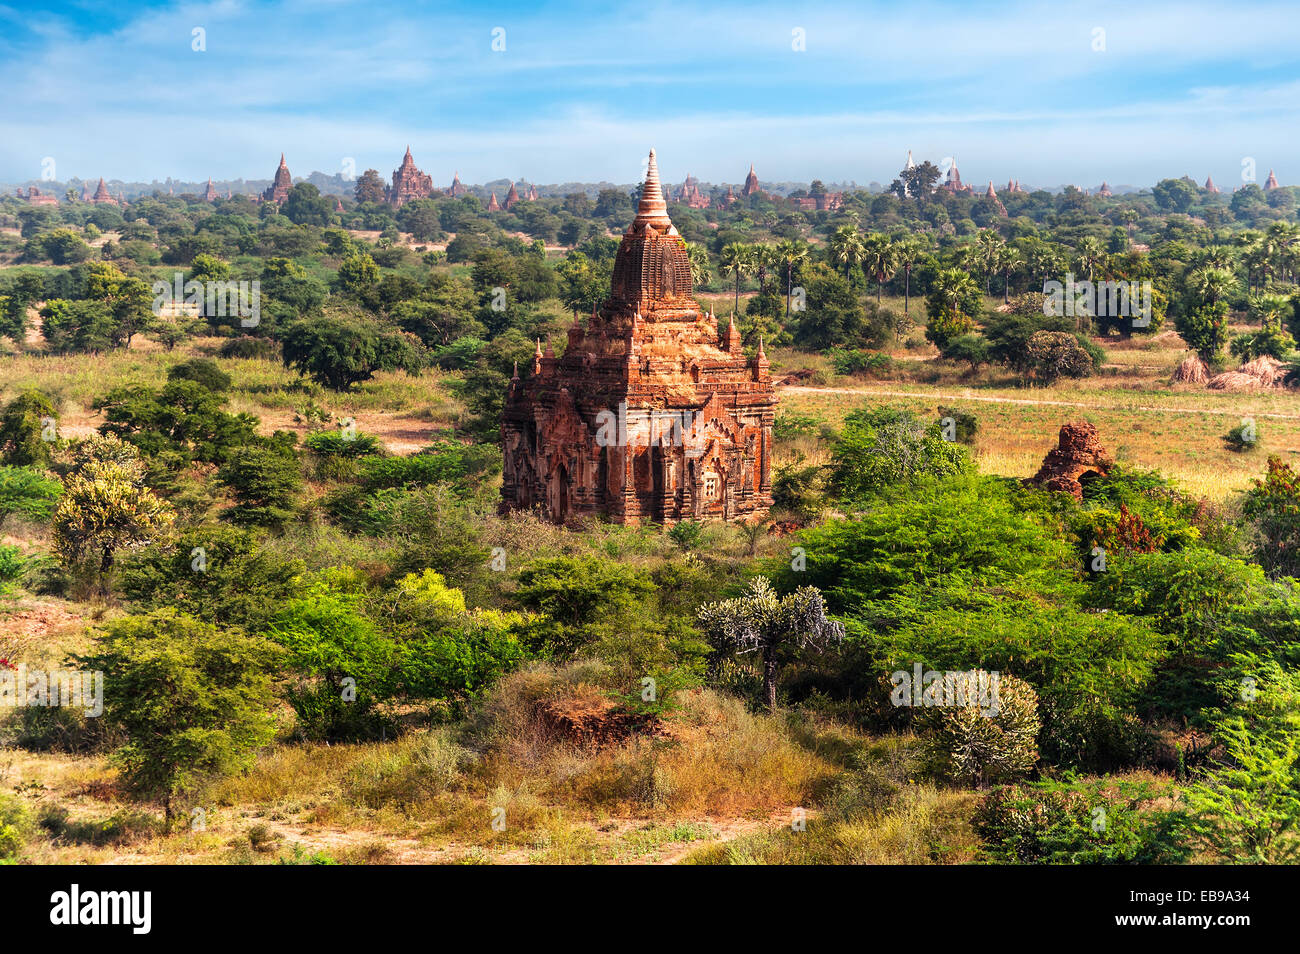 Paysages de voyages et destinations. L'architecture incroyable de vieux temples bouddhistes à Bagan Royaume, Myanmar (Birmanie) Banque D'Images